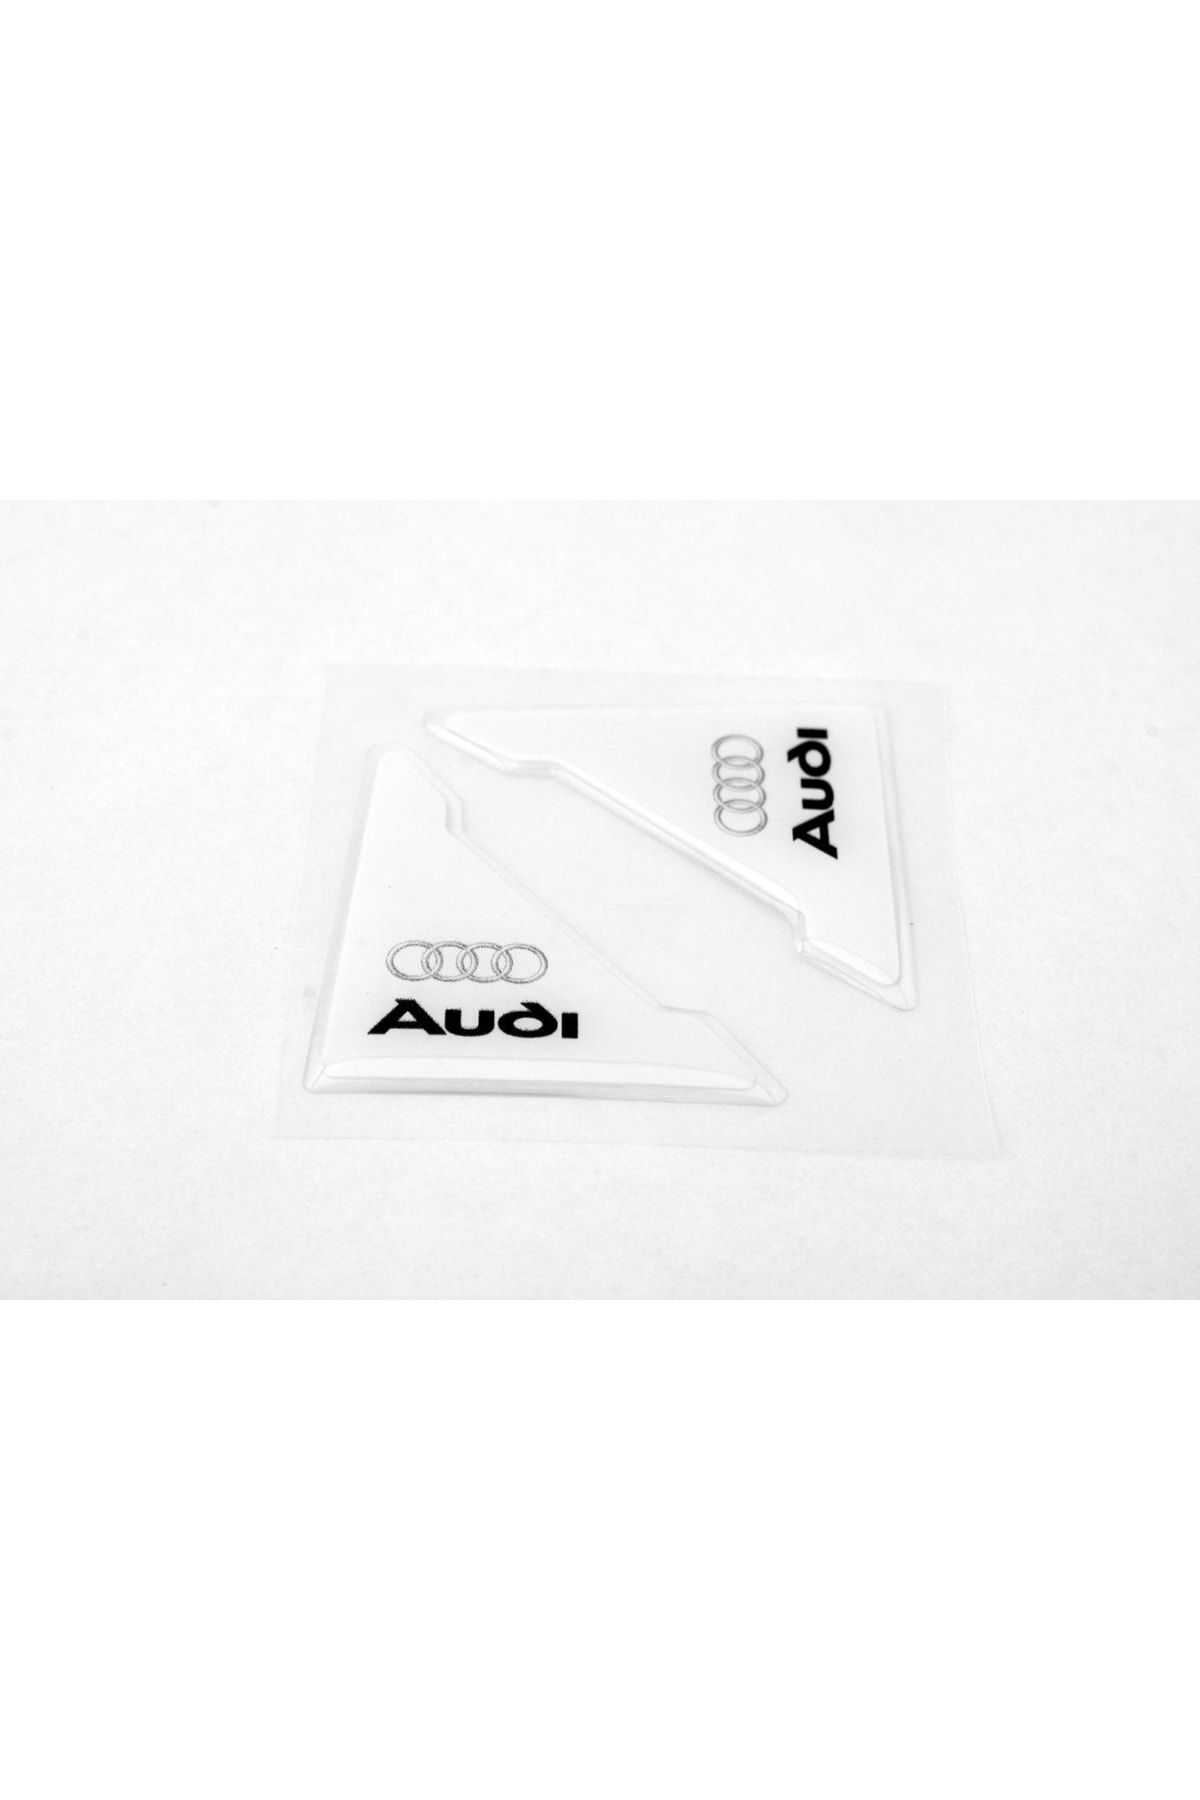 Flow Audi Özel Logolu Otomobil Kapı Çizik Darbe Koruma Silikon Beyaz Uyumlu